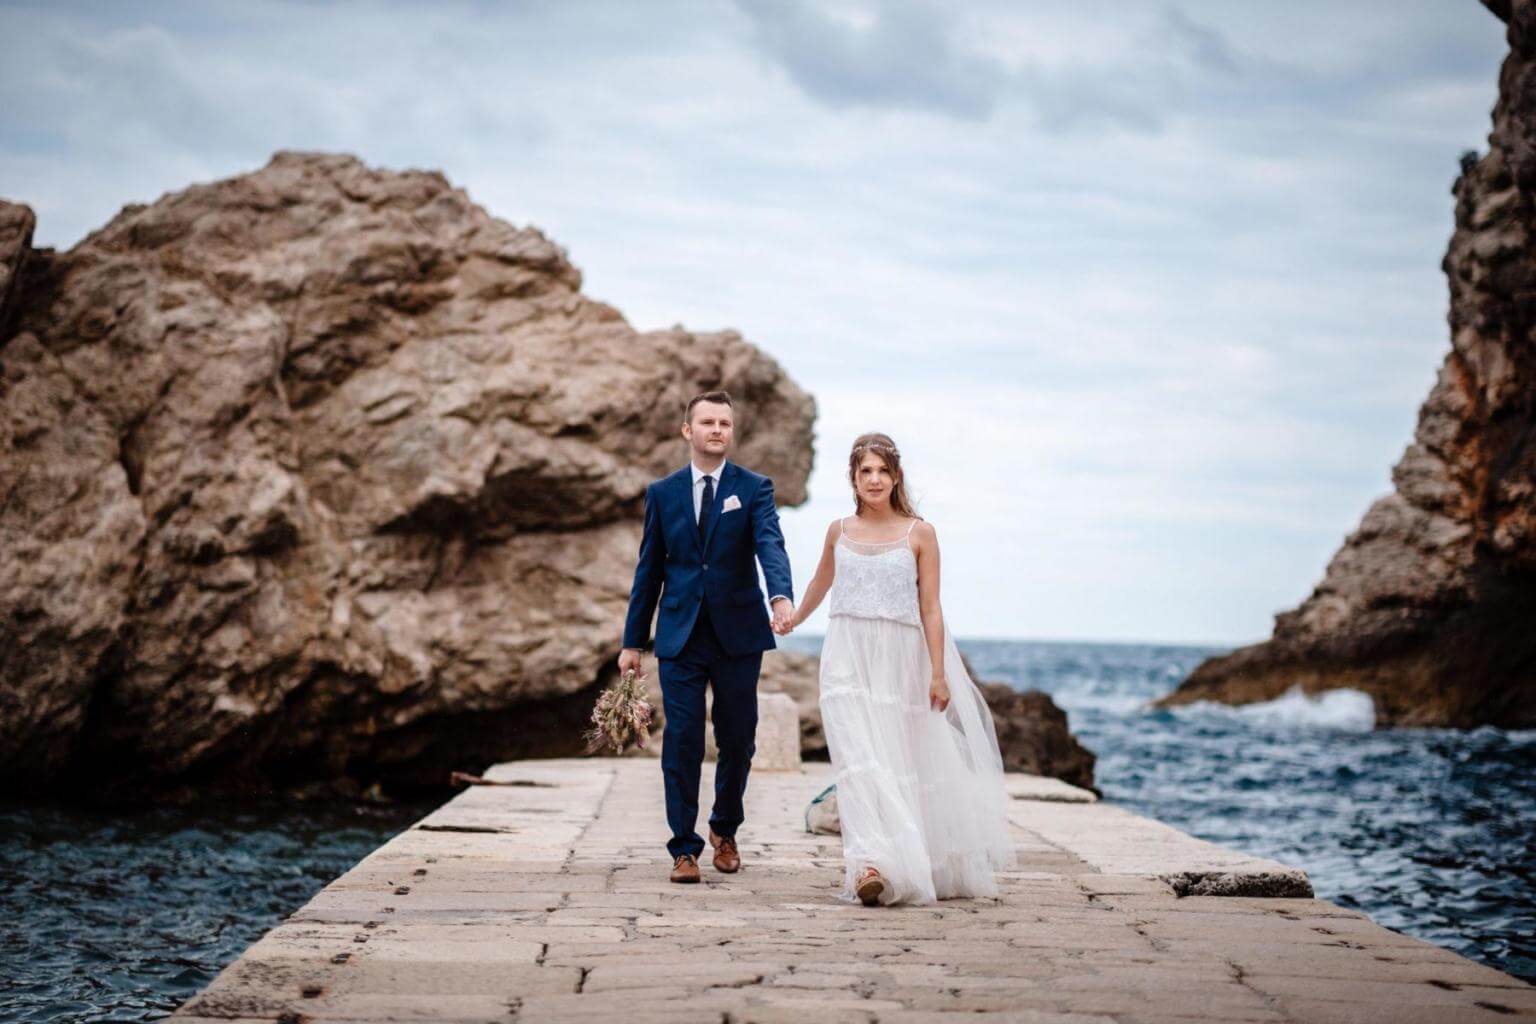 Brautpar auf Steinsteg bei Hochzeit in Kroatien